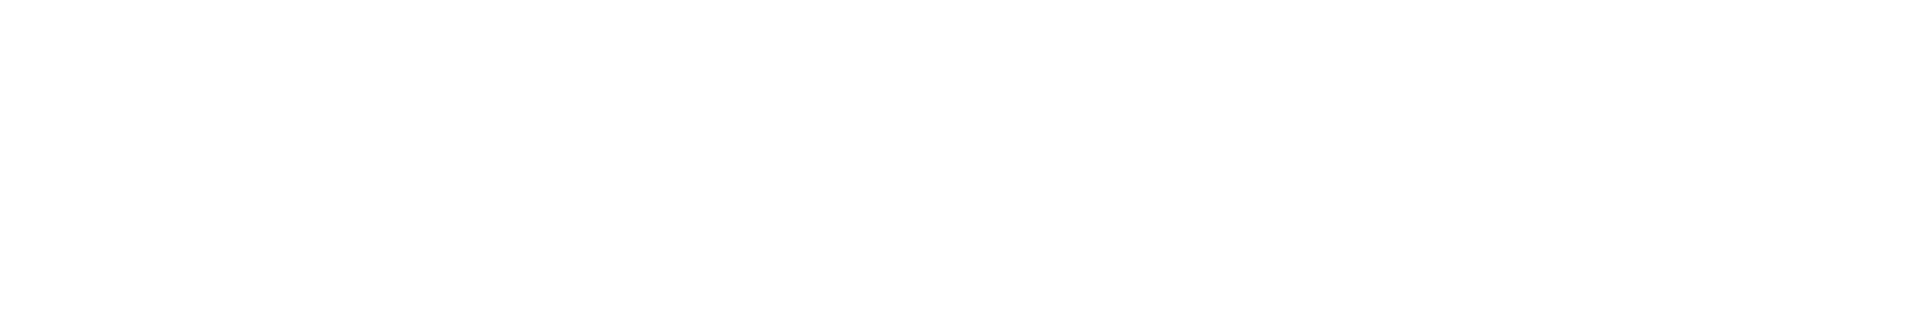 Logo Freie Wähler Peiner Land Peiner BürgerGemeinschaft weiss